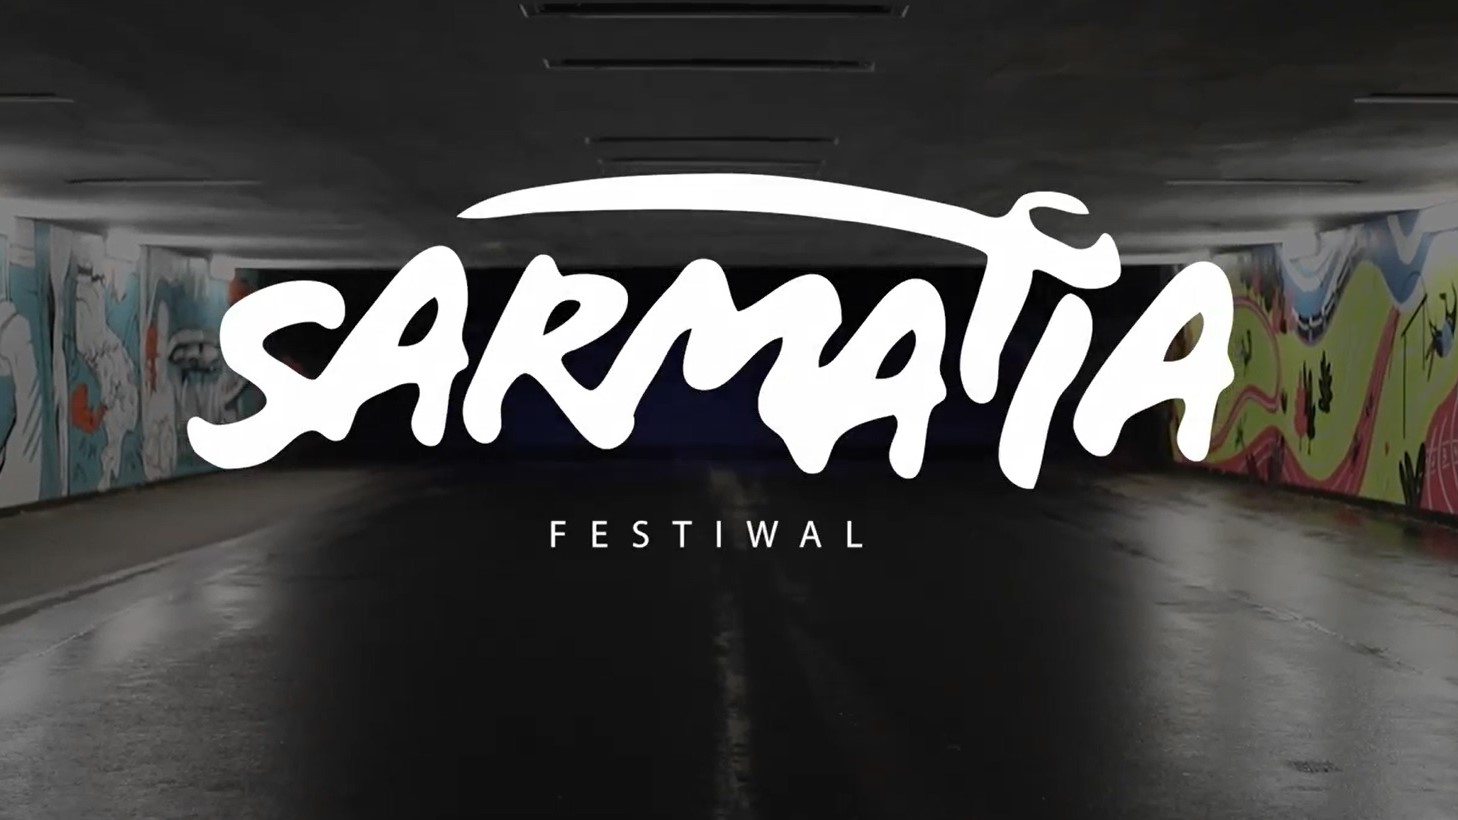 festiwal sarmatia  - Festiwal Sarmatia 